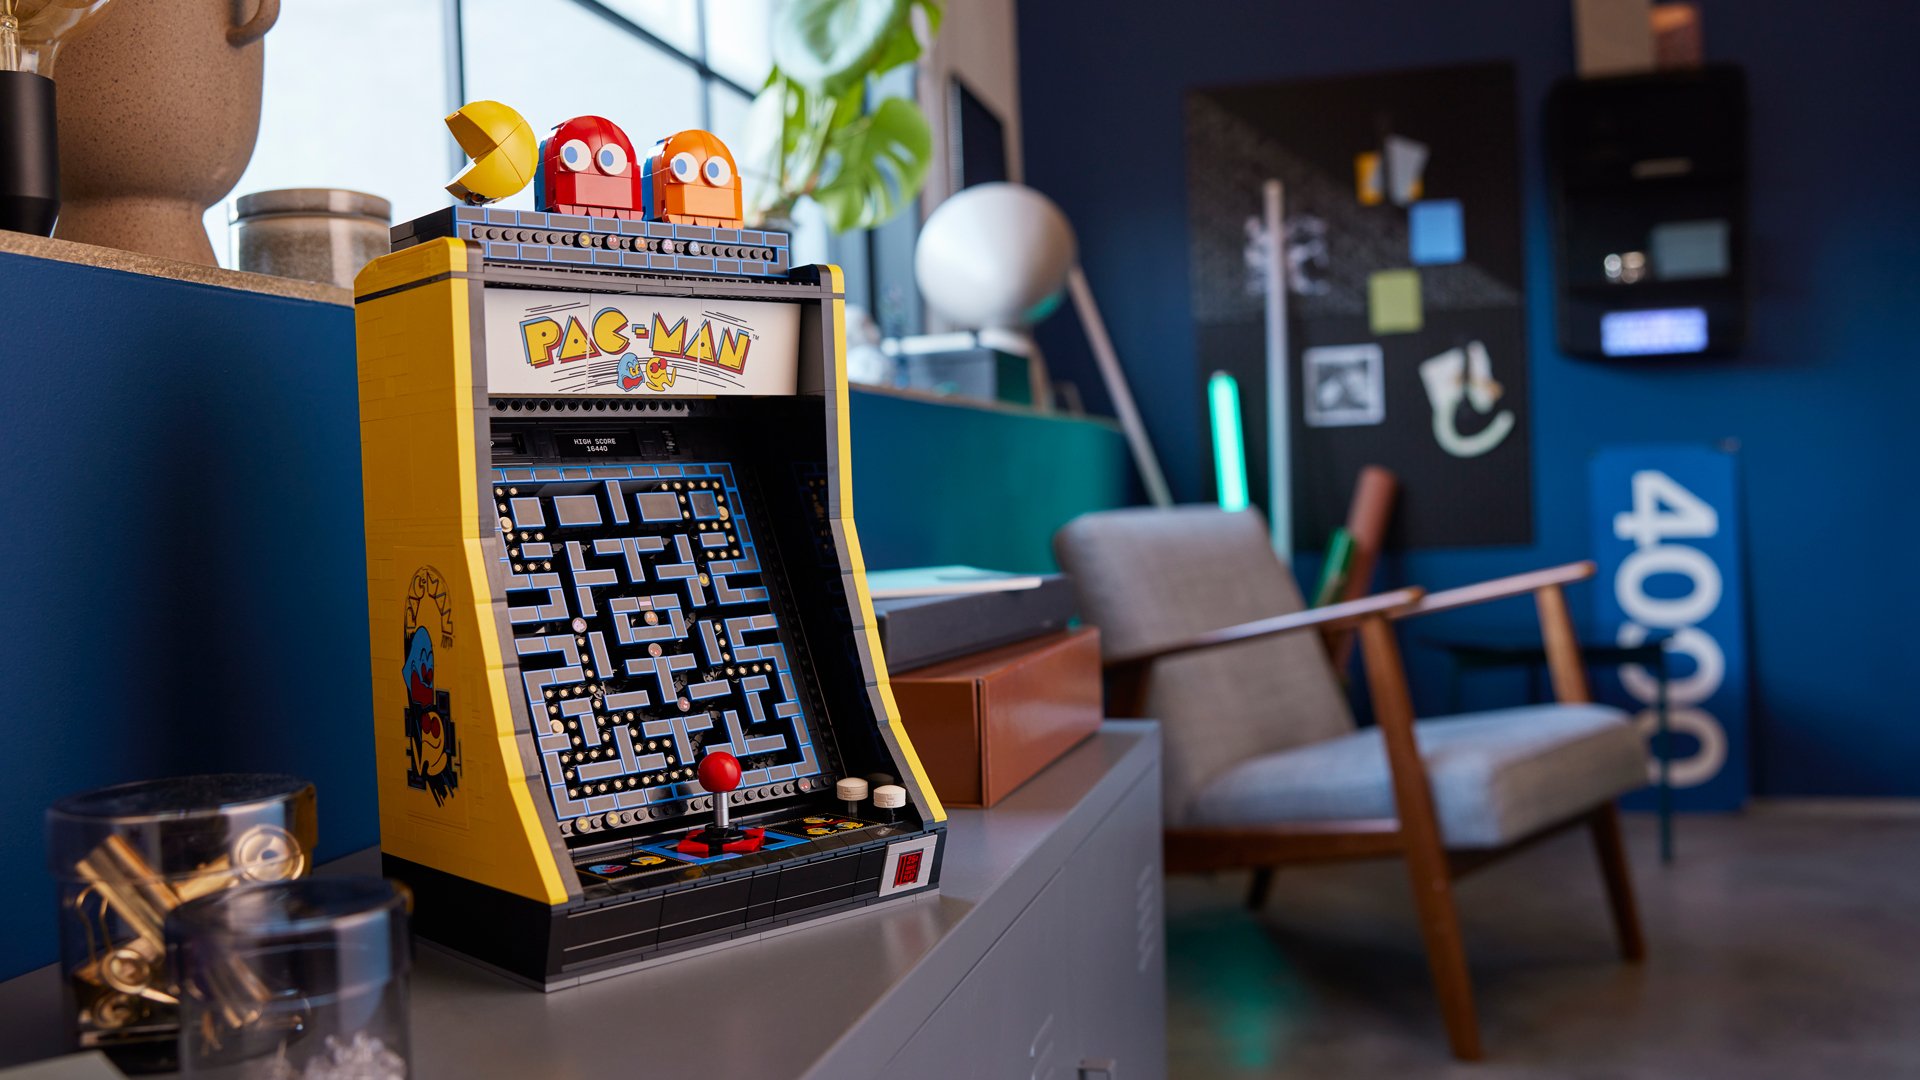 A Pac-Man arcade made of Lego